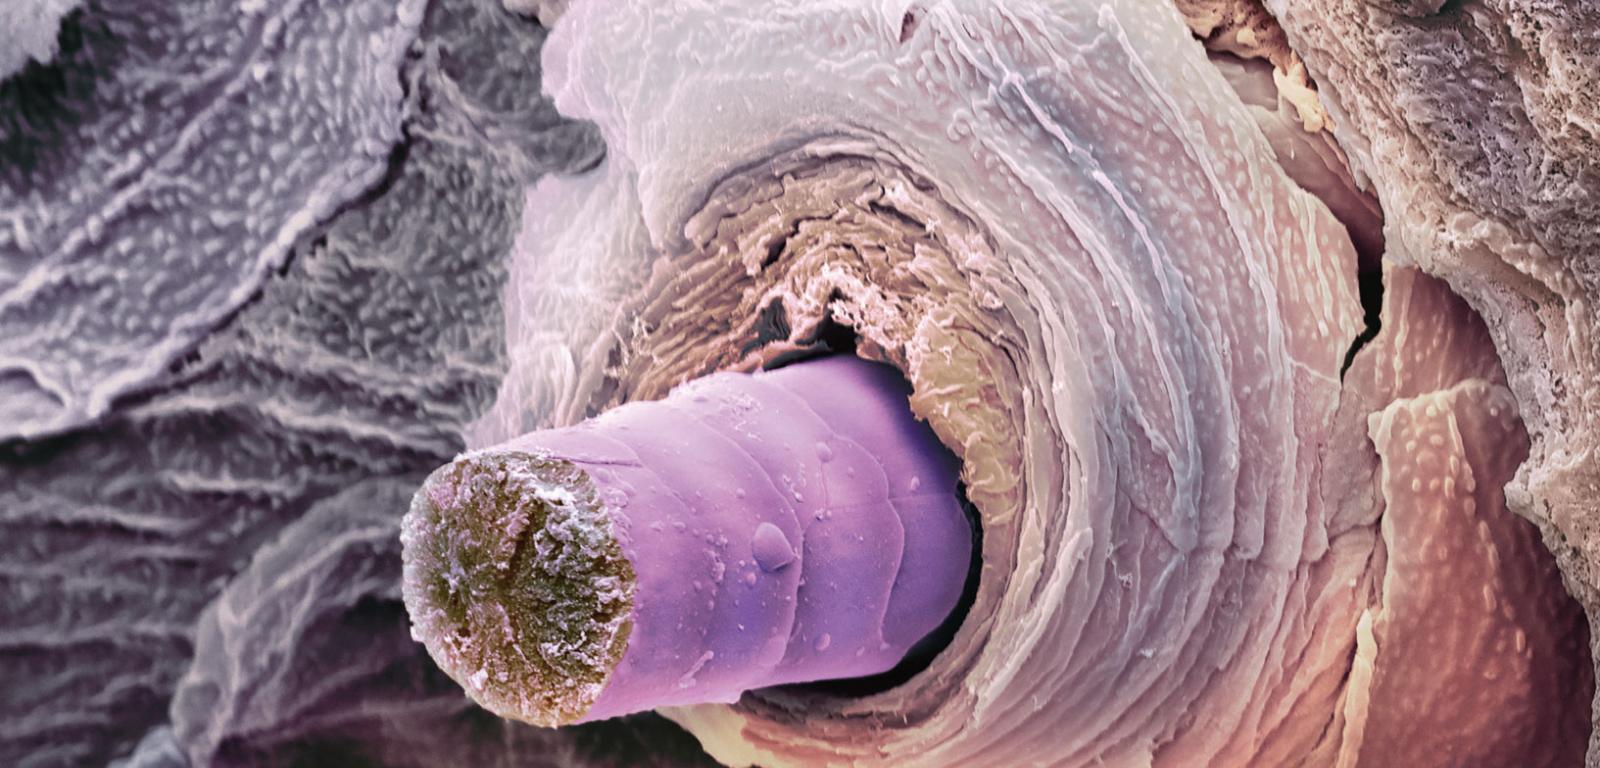 Pokolorowane zdjęcie (spod skaningowego mikroskopu elektronowego) poprzecznego przekroju łodygi włosa (fioletowy) i mieszka włosowego, w którym włos jest zakotwiczony.